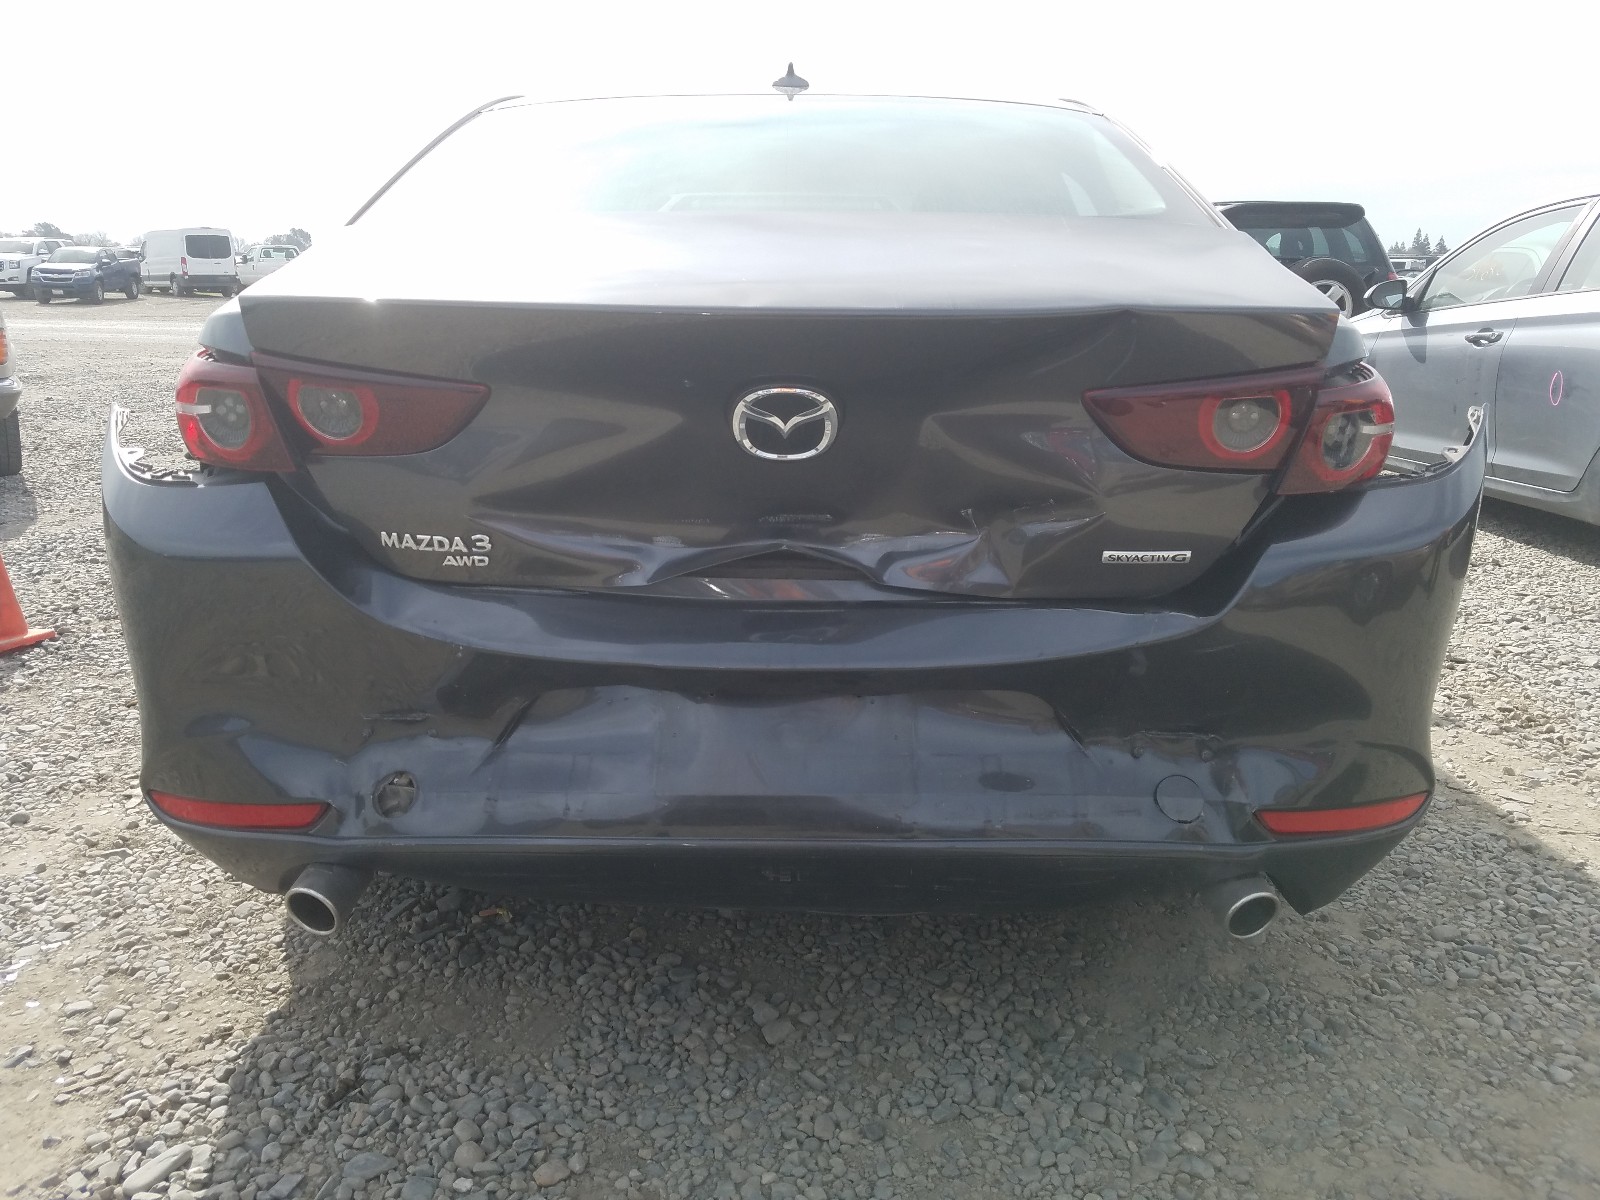 Mazda 3 premium 2020